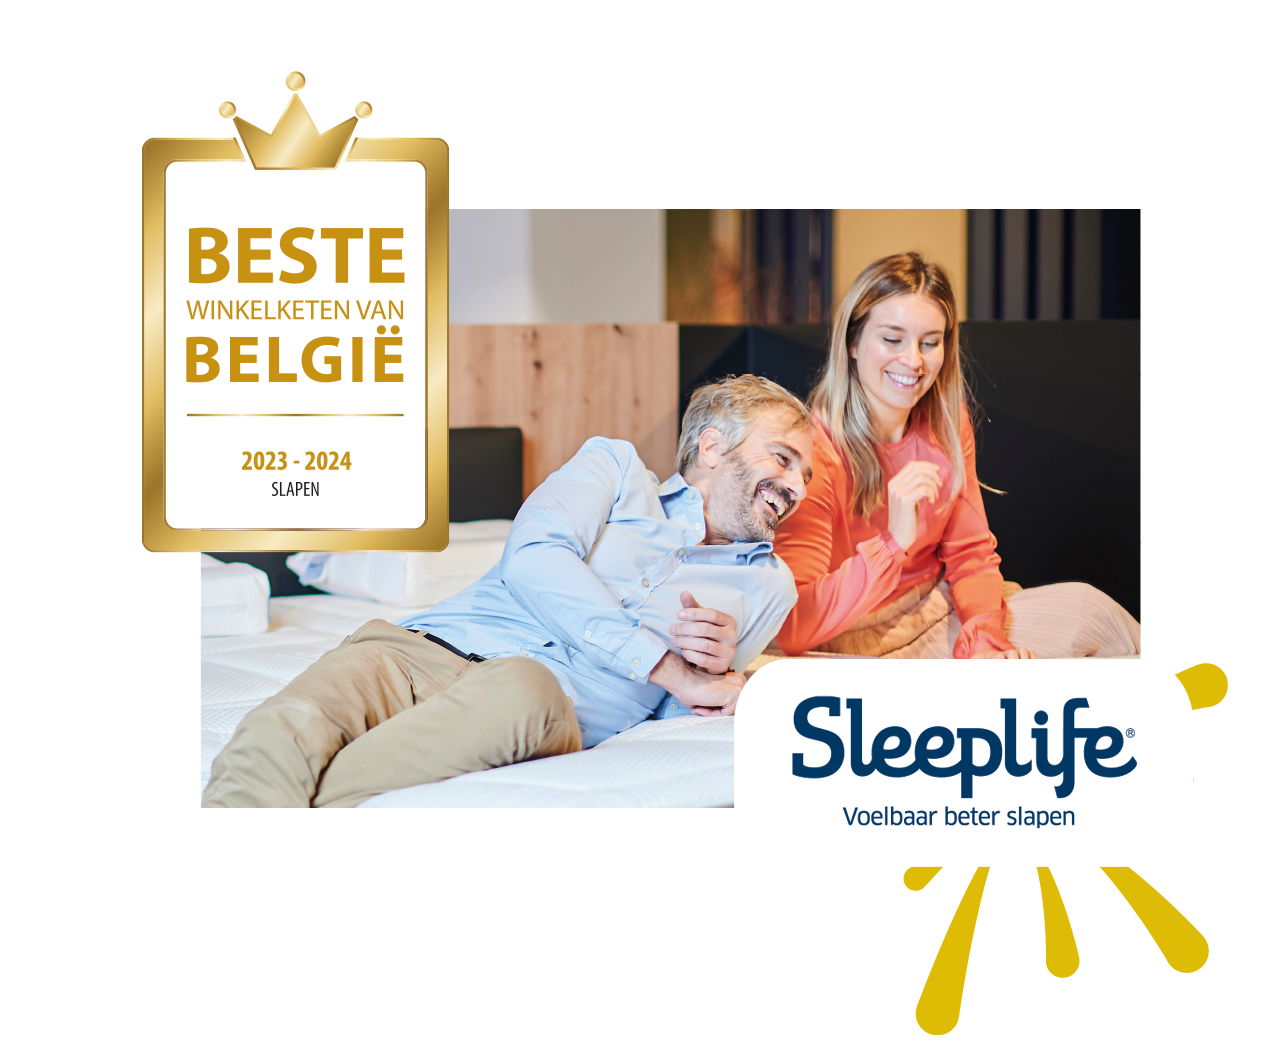 Sleeplife® verkozen tot 'Beste Winkelketen van België 2023 - 2024'